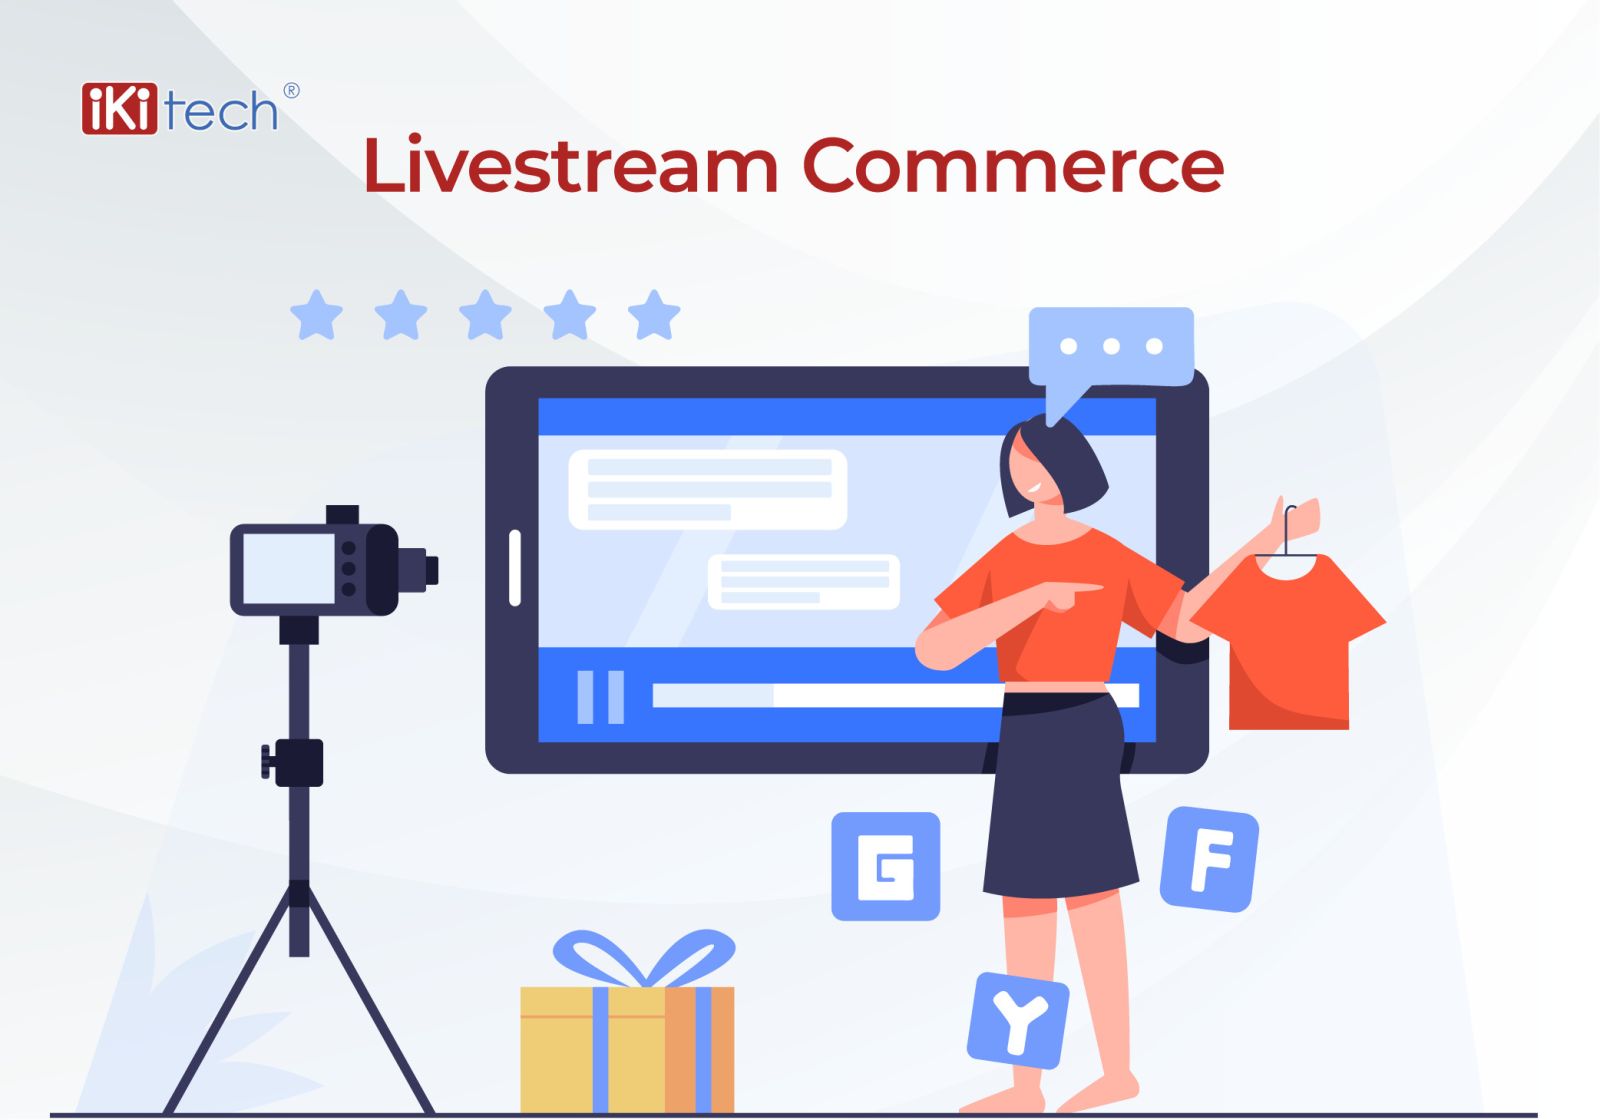 Livestream commerce